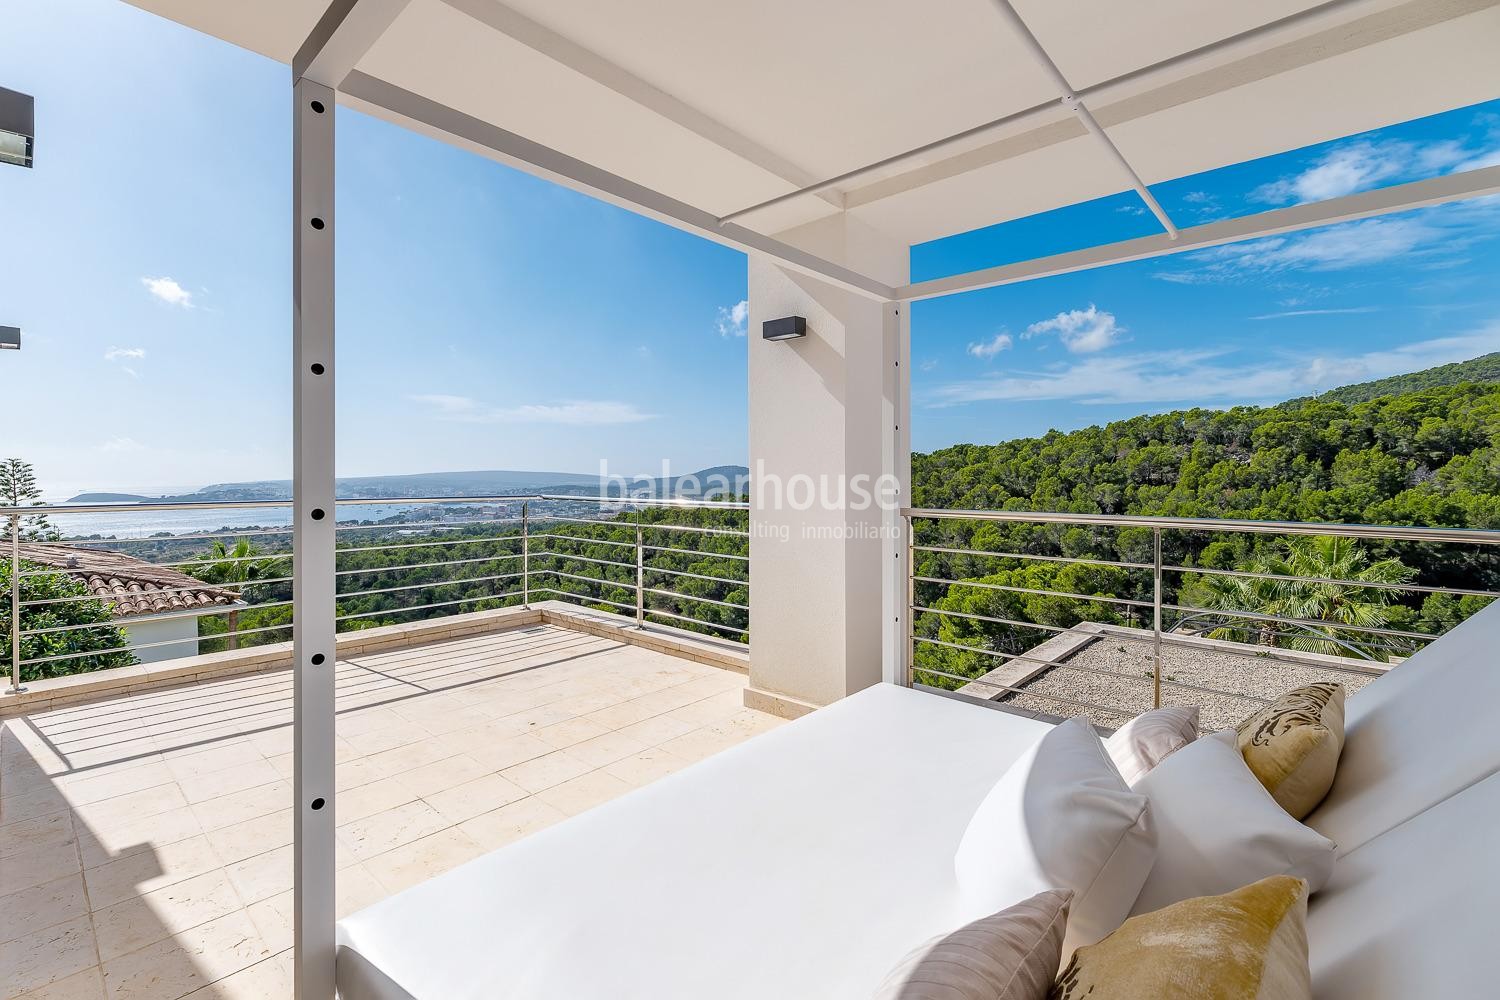 Villa im mediterranen Stil mit herrlichem Meerblick und Sonnenuntergängen in Costa den Blanes